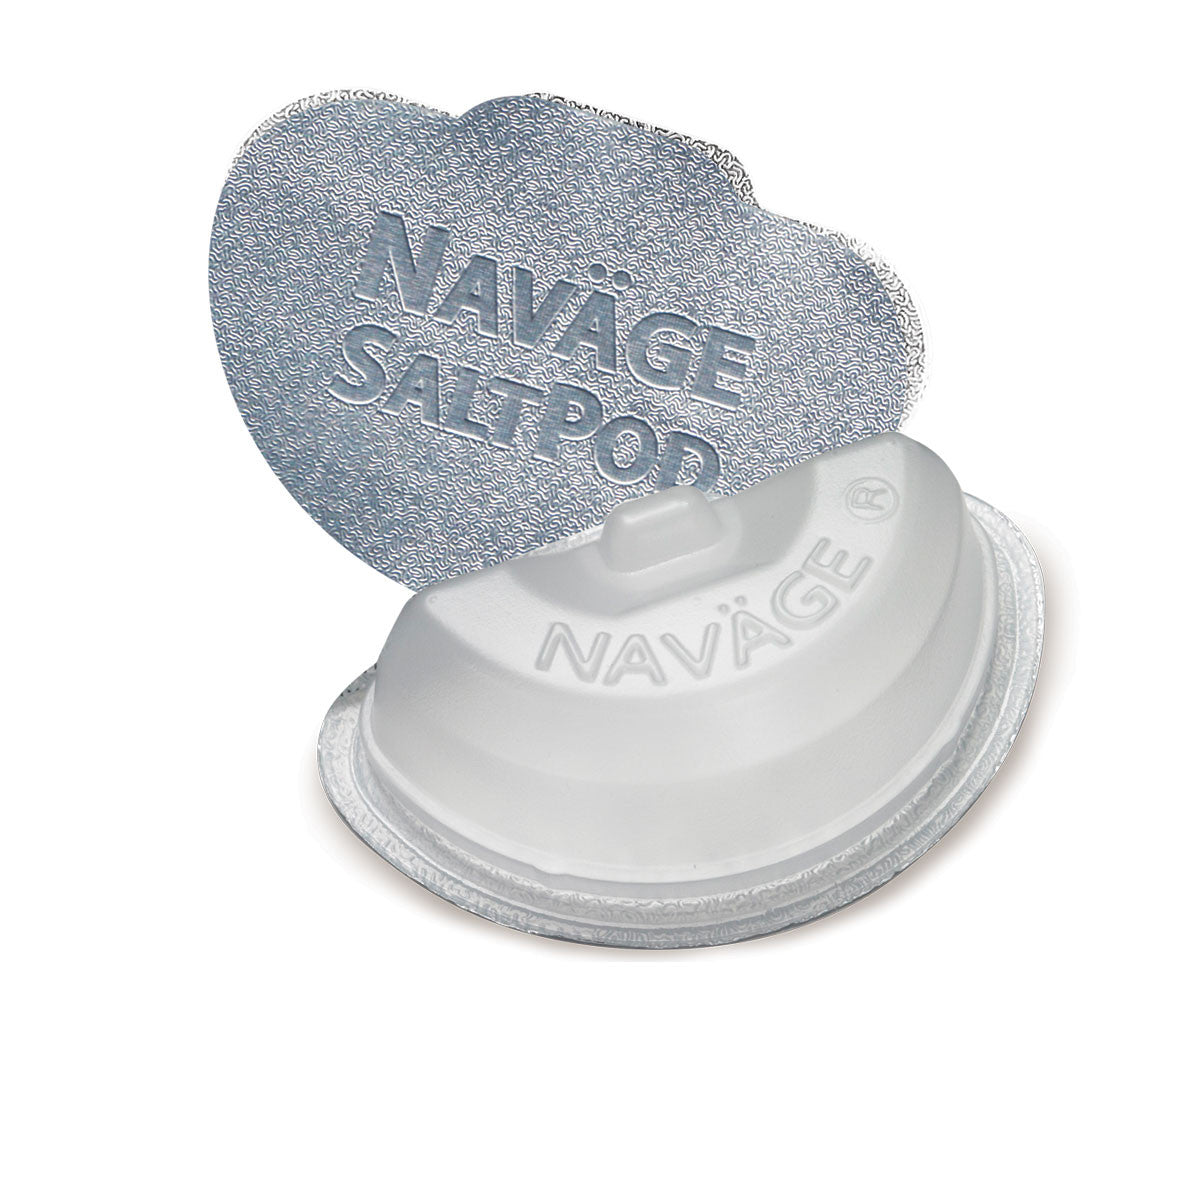 Paquete multiusuario Navage: limpiador de nariz, 20 cápsulas SaltPod, segundo muelle nasal, segundo par de almohadas para la nariz